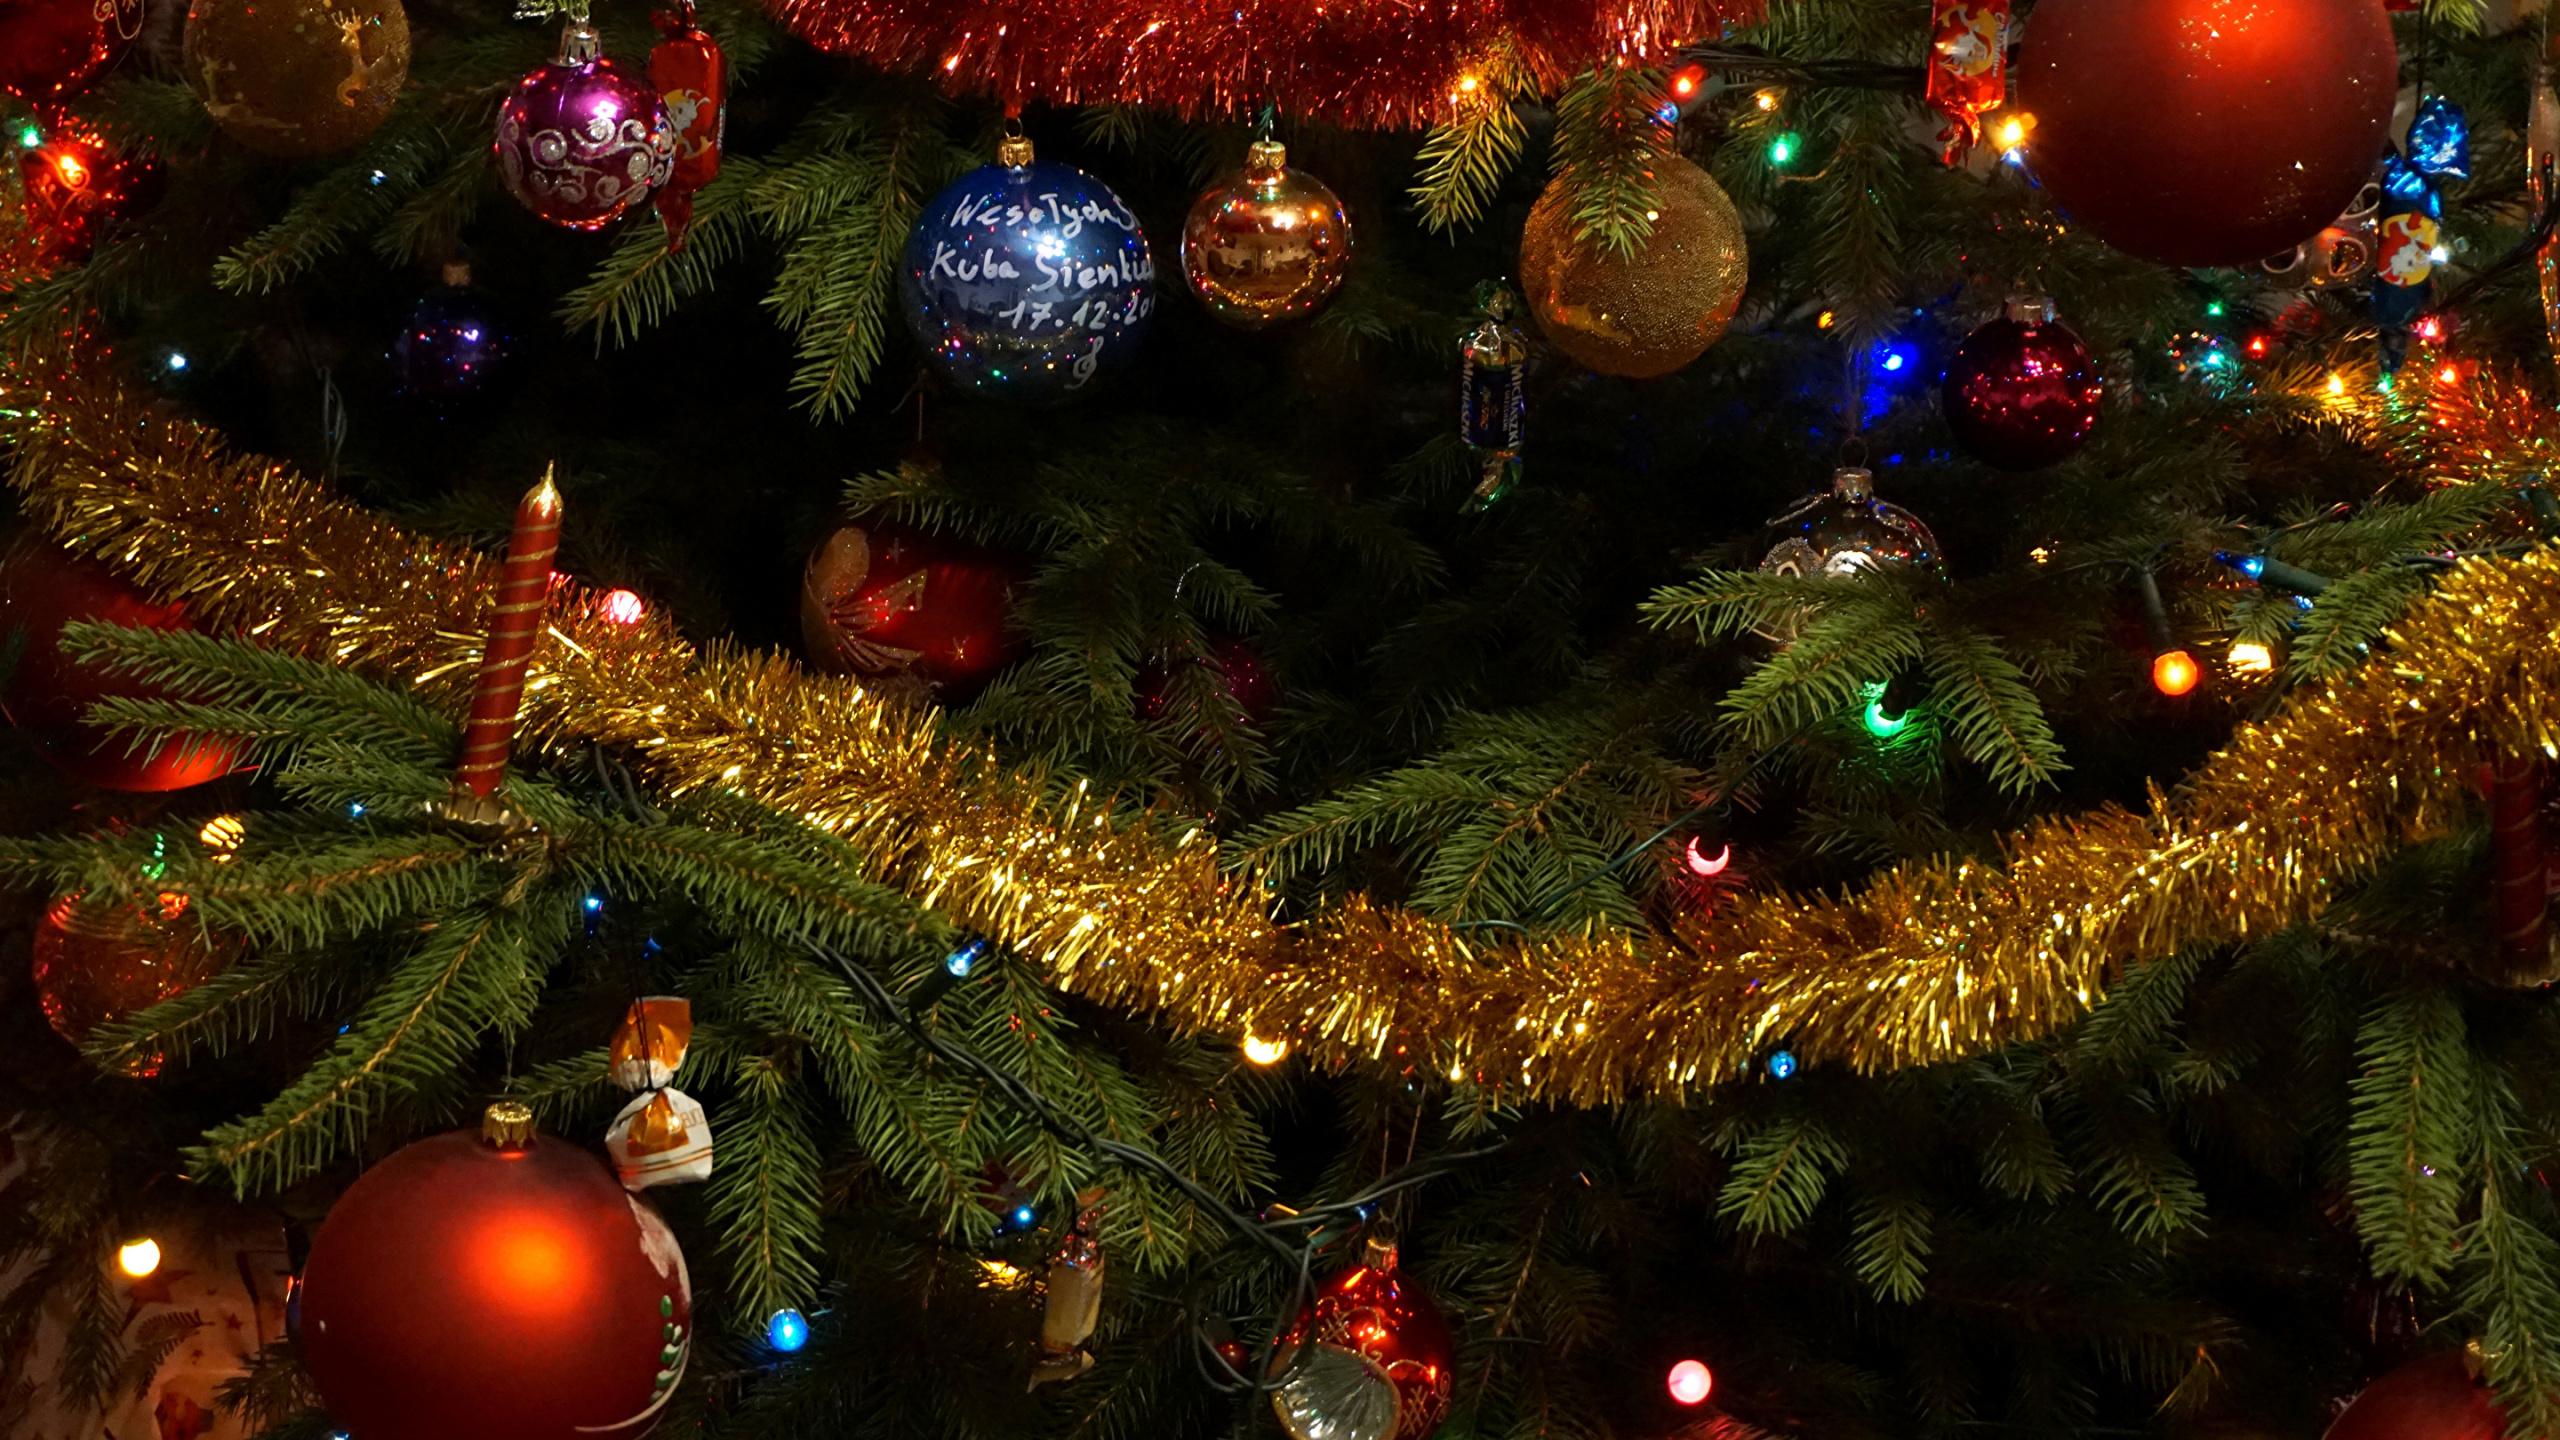 El Día De Navidad, Luces de Navidad, Decoración de la Navidad, Árbol de Navidad Artificial, Adorno de Navidad. Wallpaper in 2560x1440 Resolution